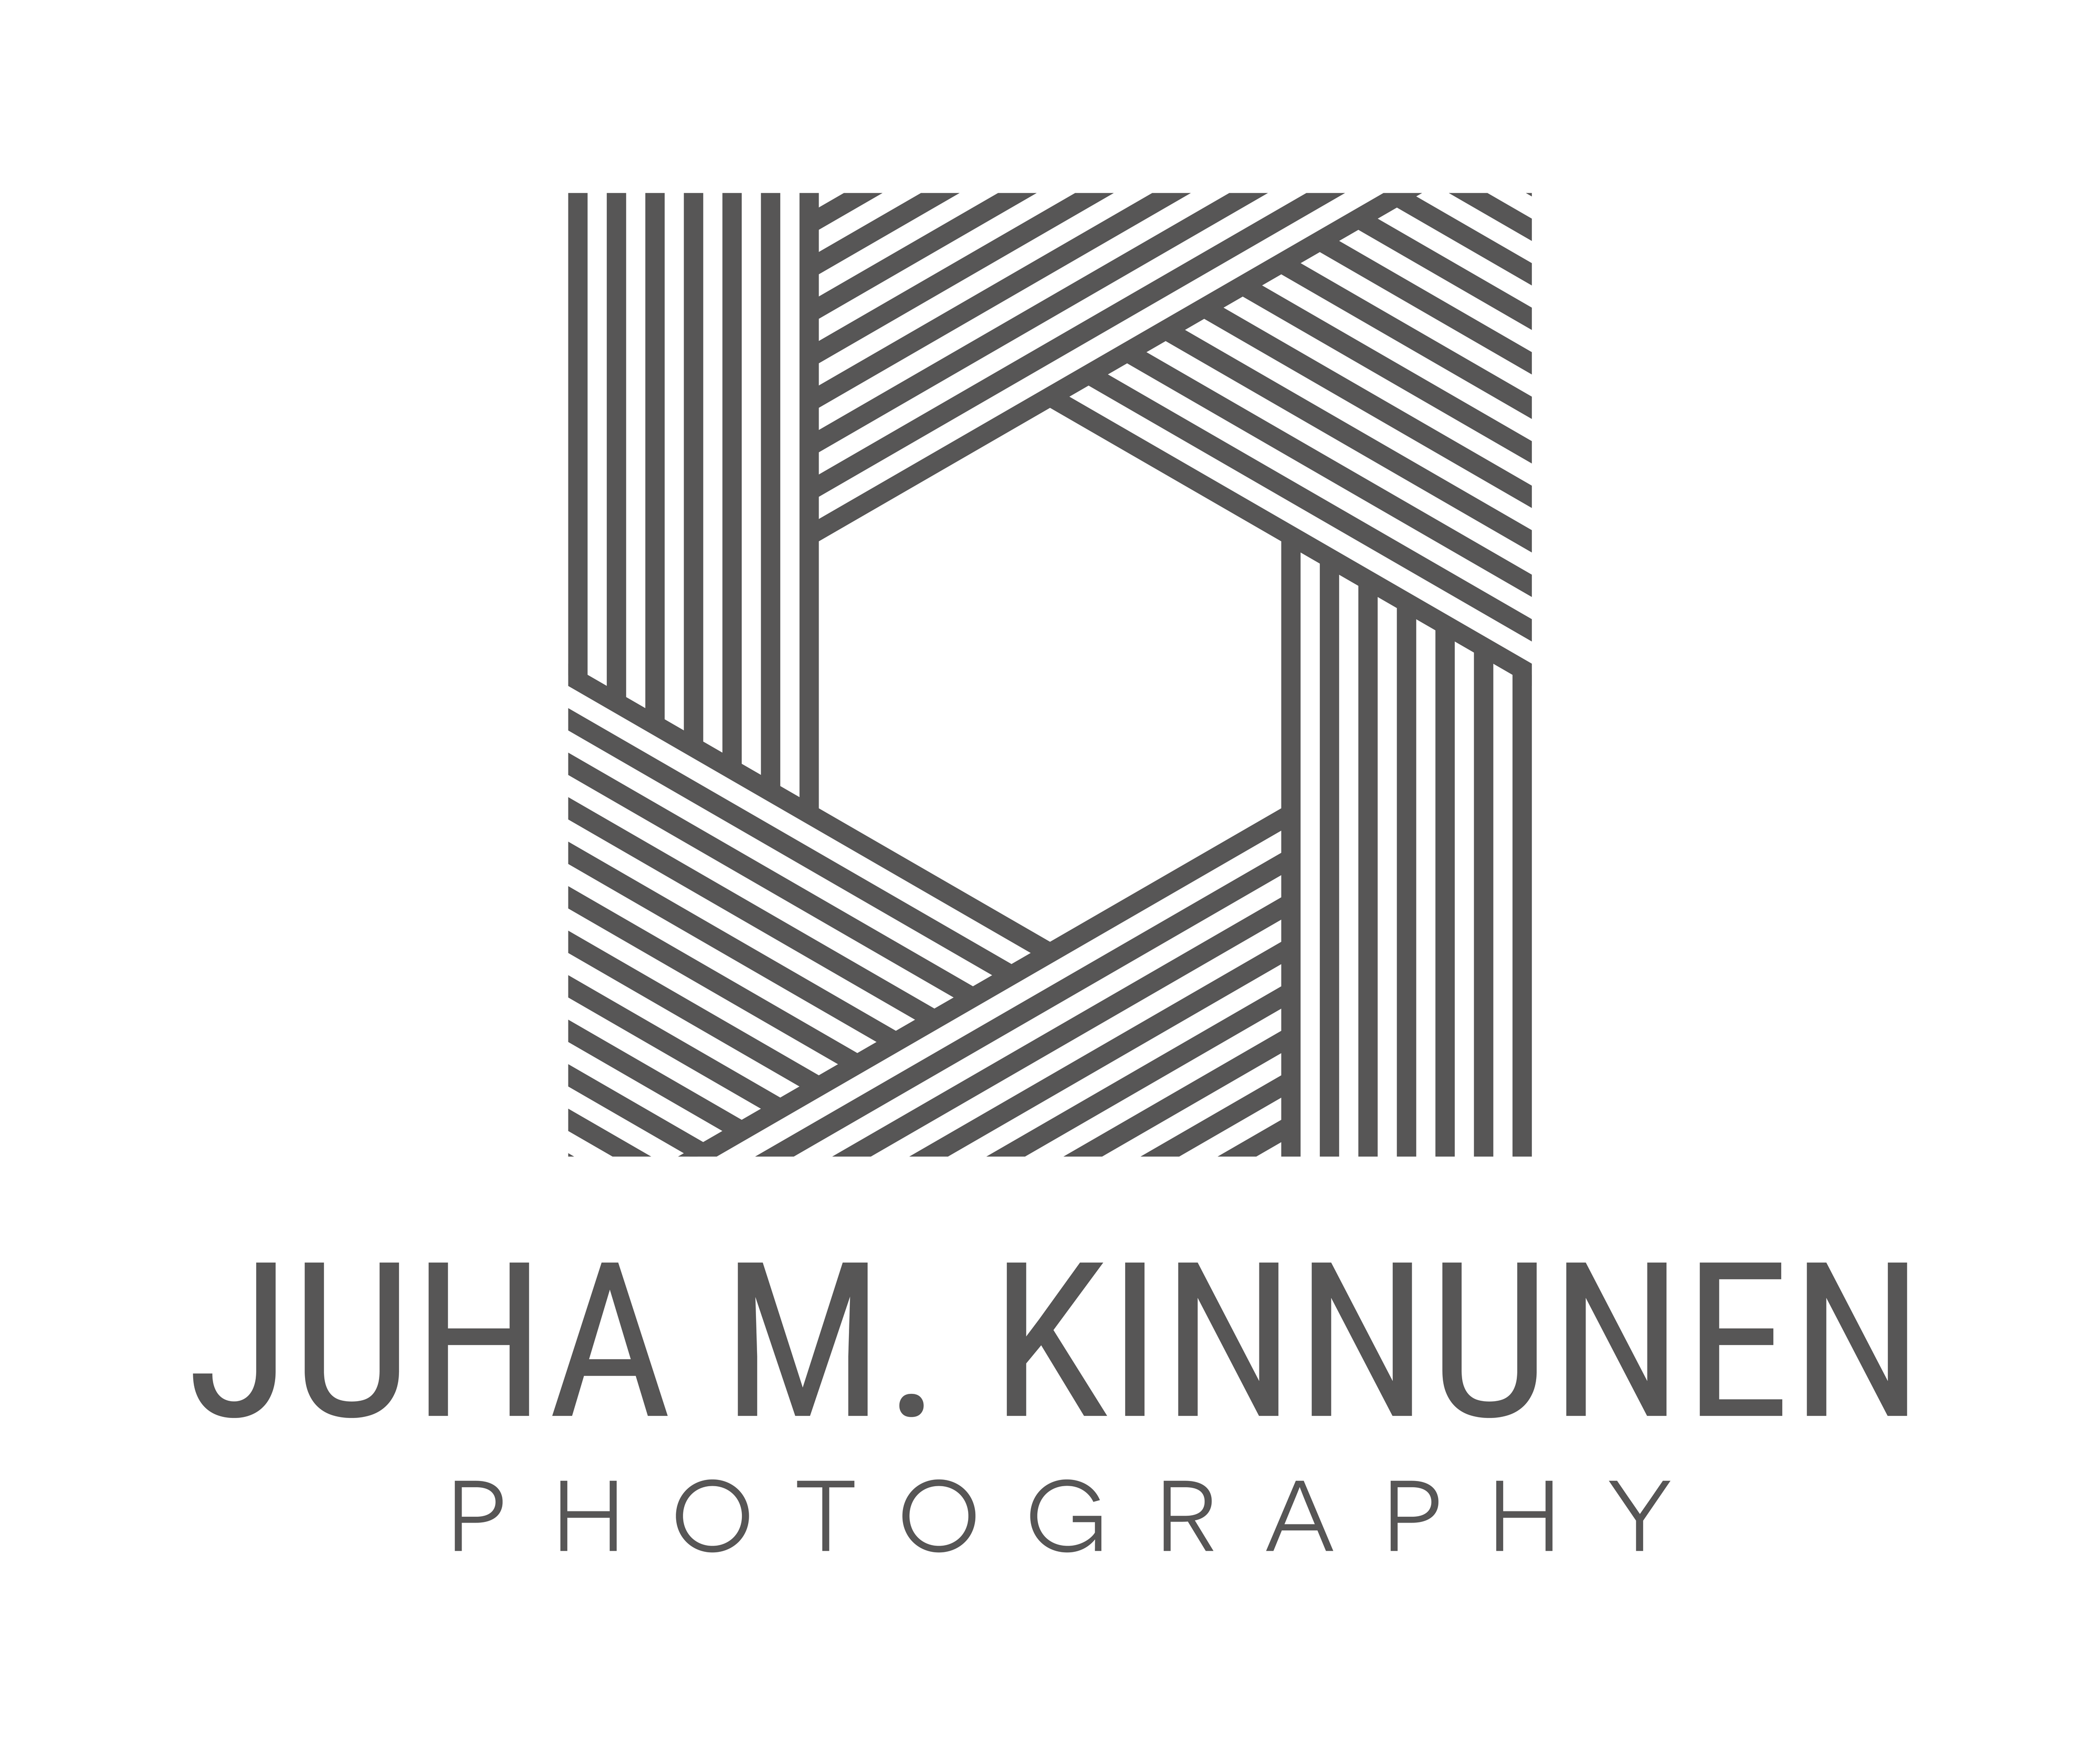 Juha M. Kinnunen Photography